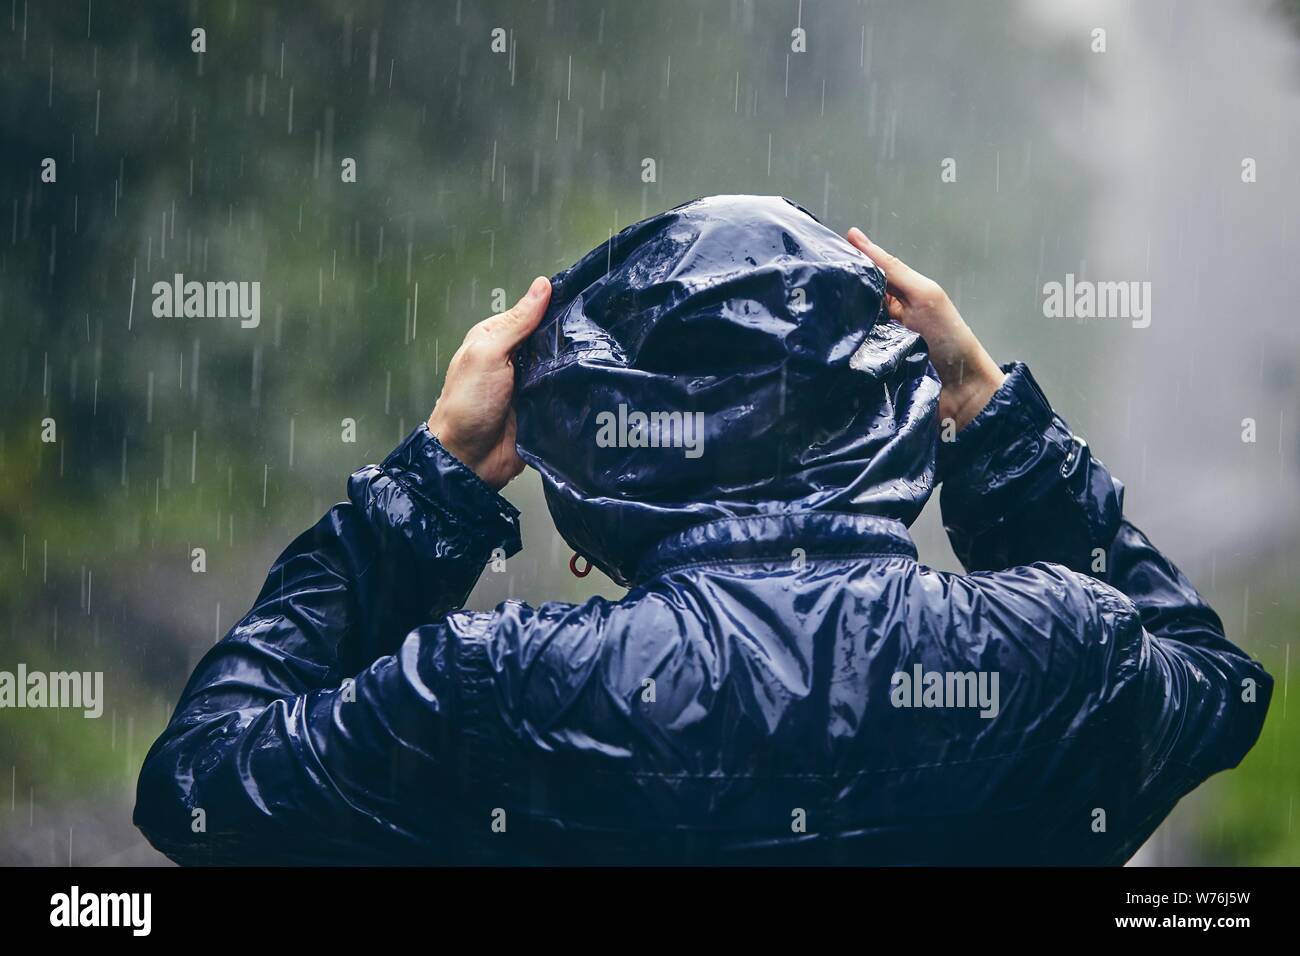 Reise bei schlechtem Wetter. Ansicht der Rückseite des jungen Mannes in Durchnäßte Jacke im starken Regen. Stockfoto